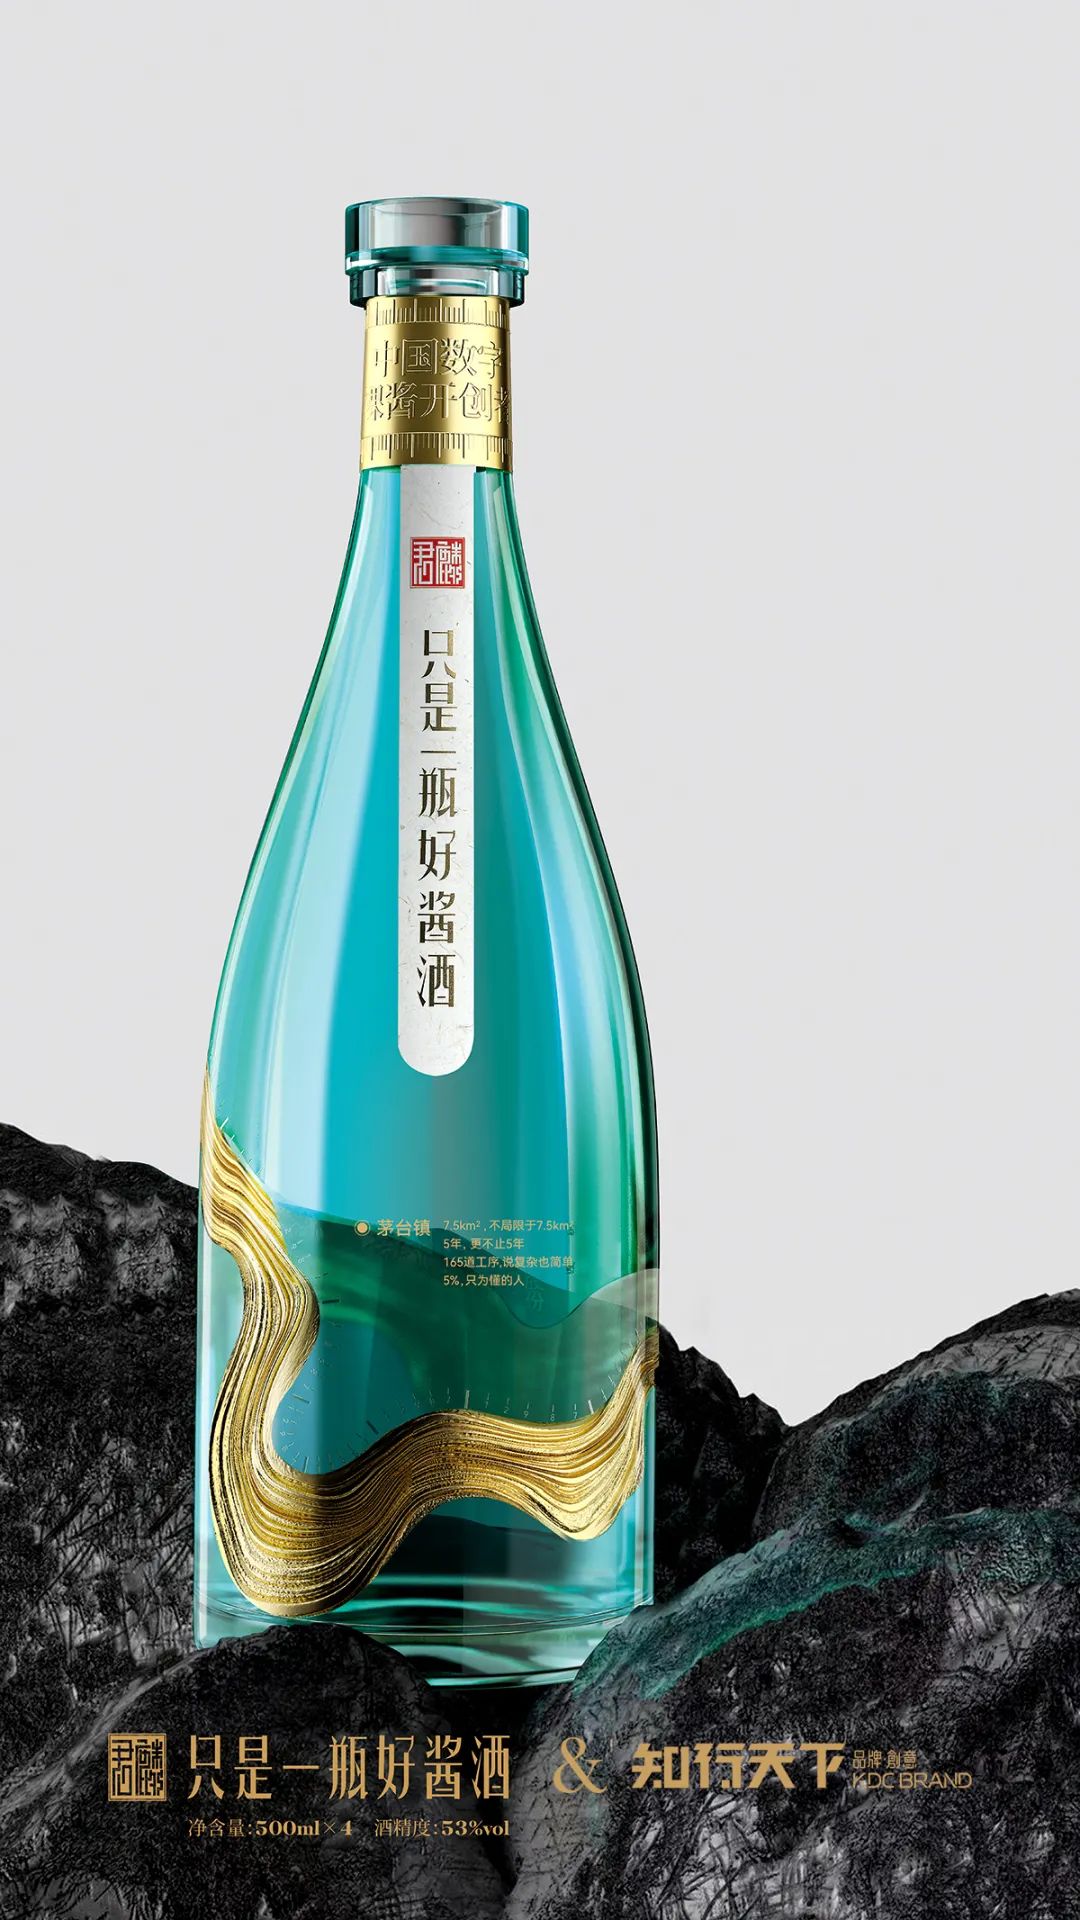 君麟酱酒 & 知行天下 颠覆传统酱酒行业的青绿赤水瓶